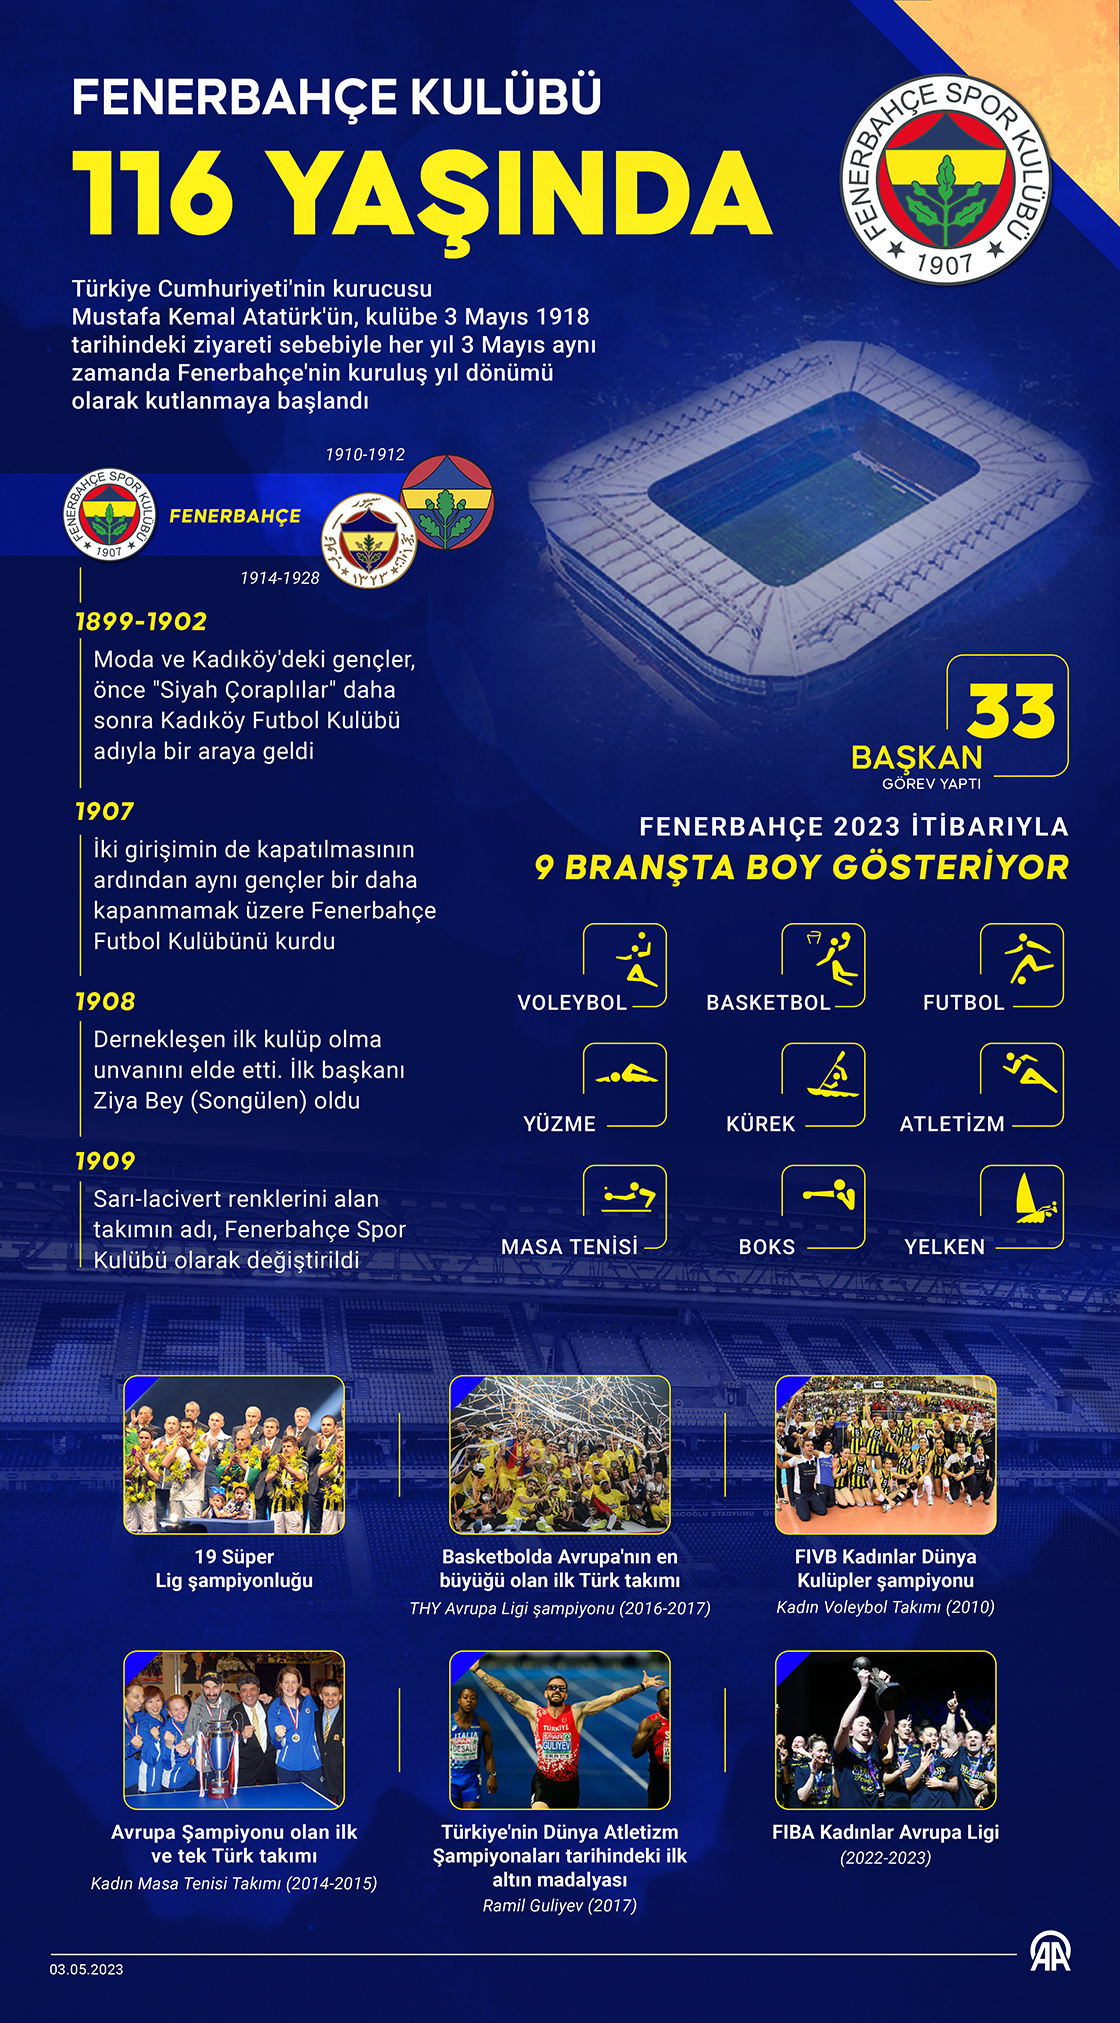 Fenerbahçe Kulübü 116 yaşında